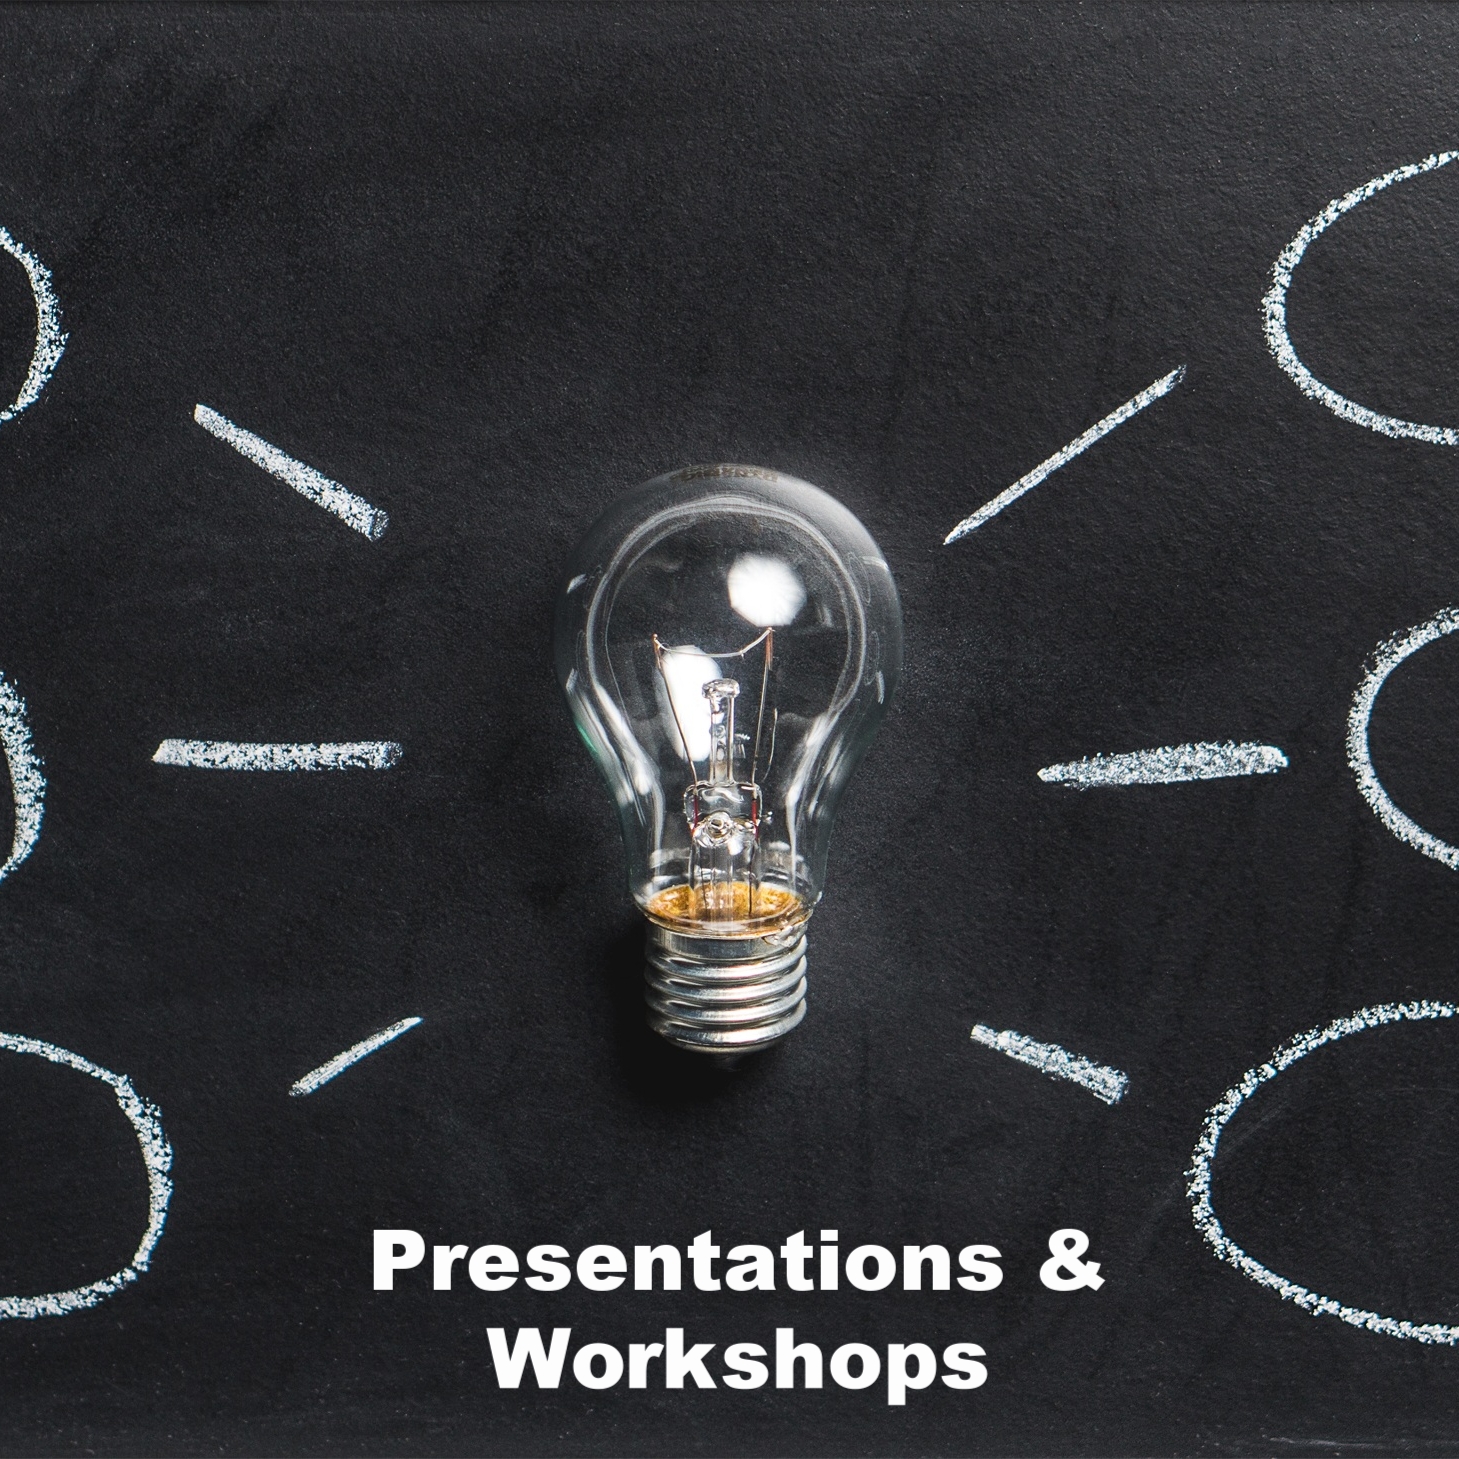 Presentations & Workshops